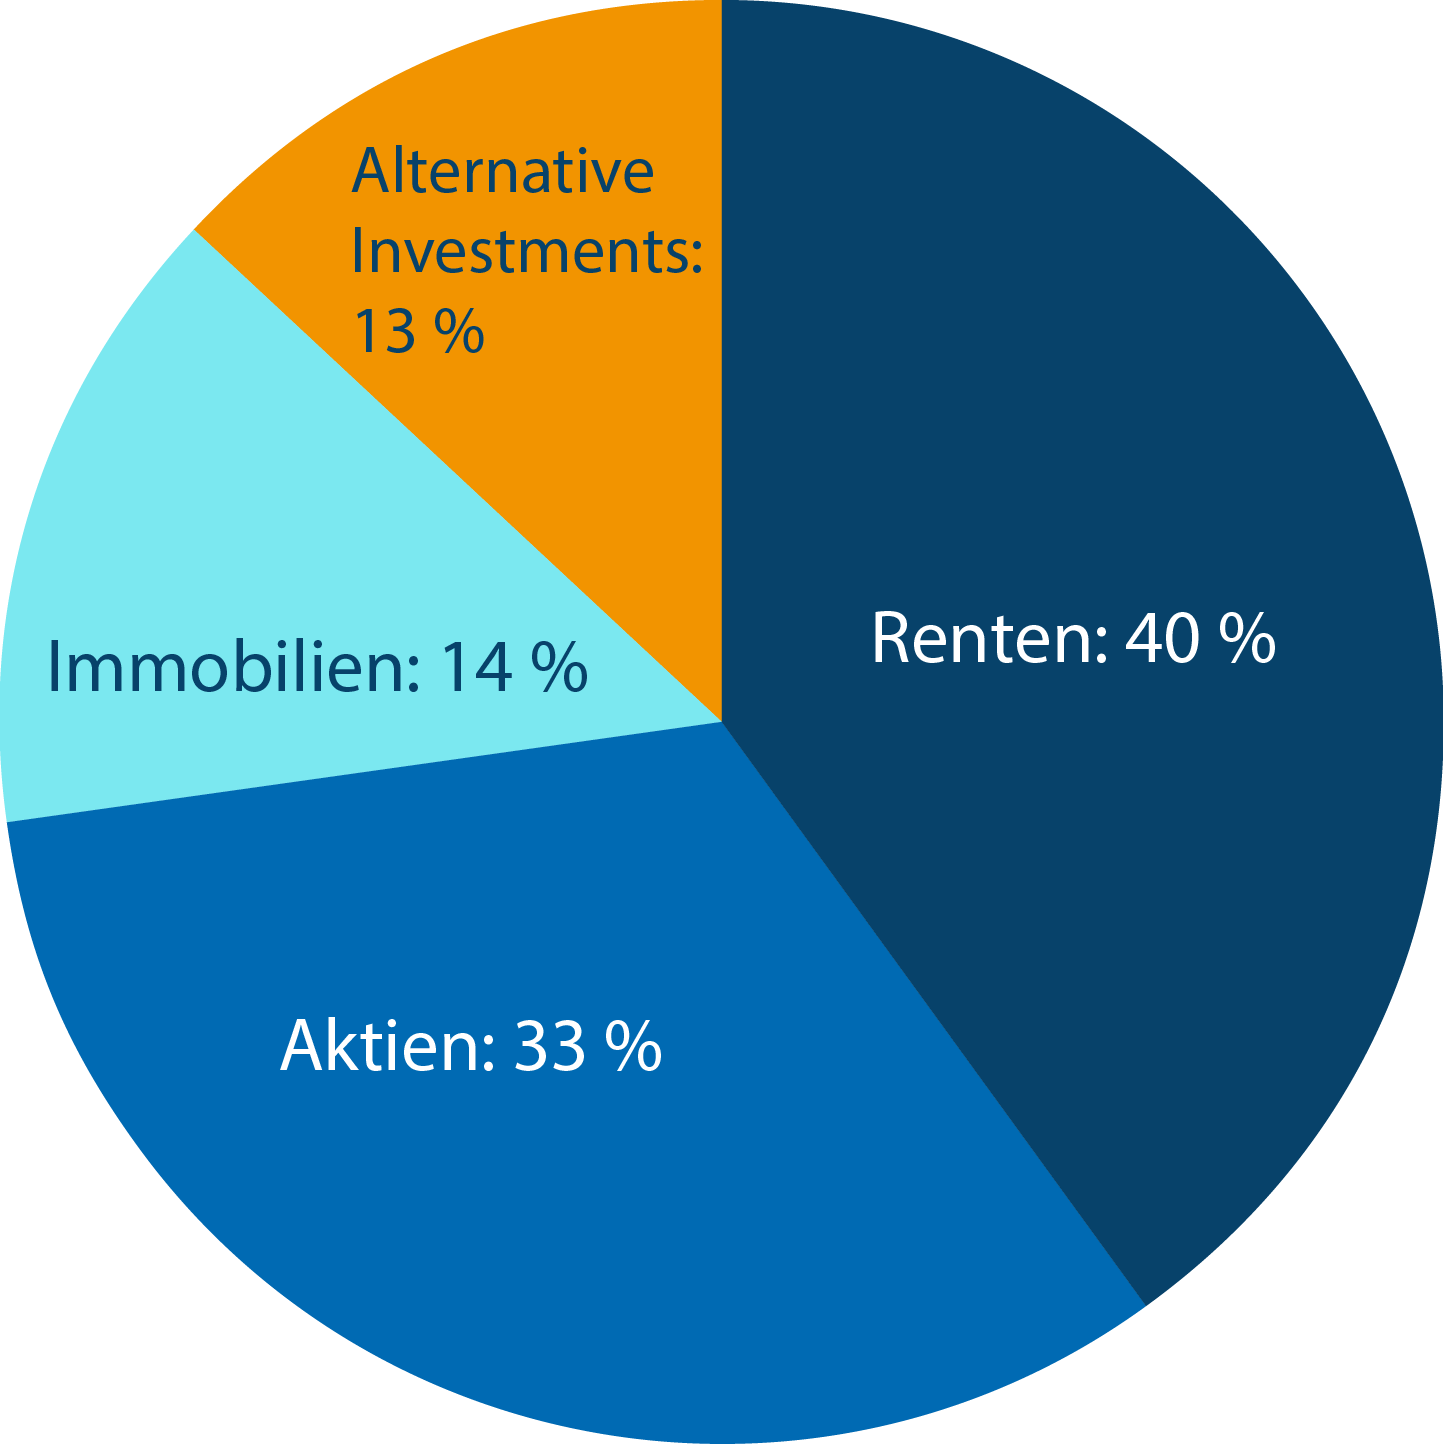 Das Tortendiagramm zeigt die Aufgliederung der Kapitalanlage: 40 % Renten, 33 Aktien, 14 % Immobilien, 13 % Alternative Investments